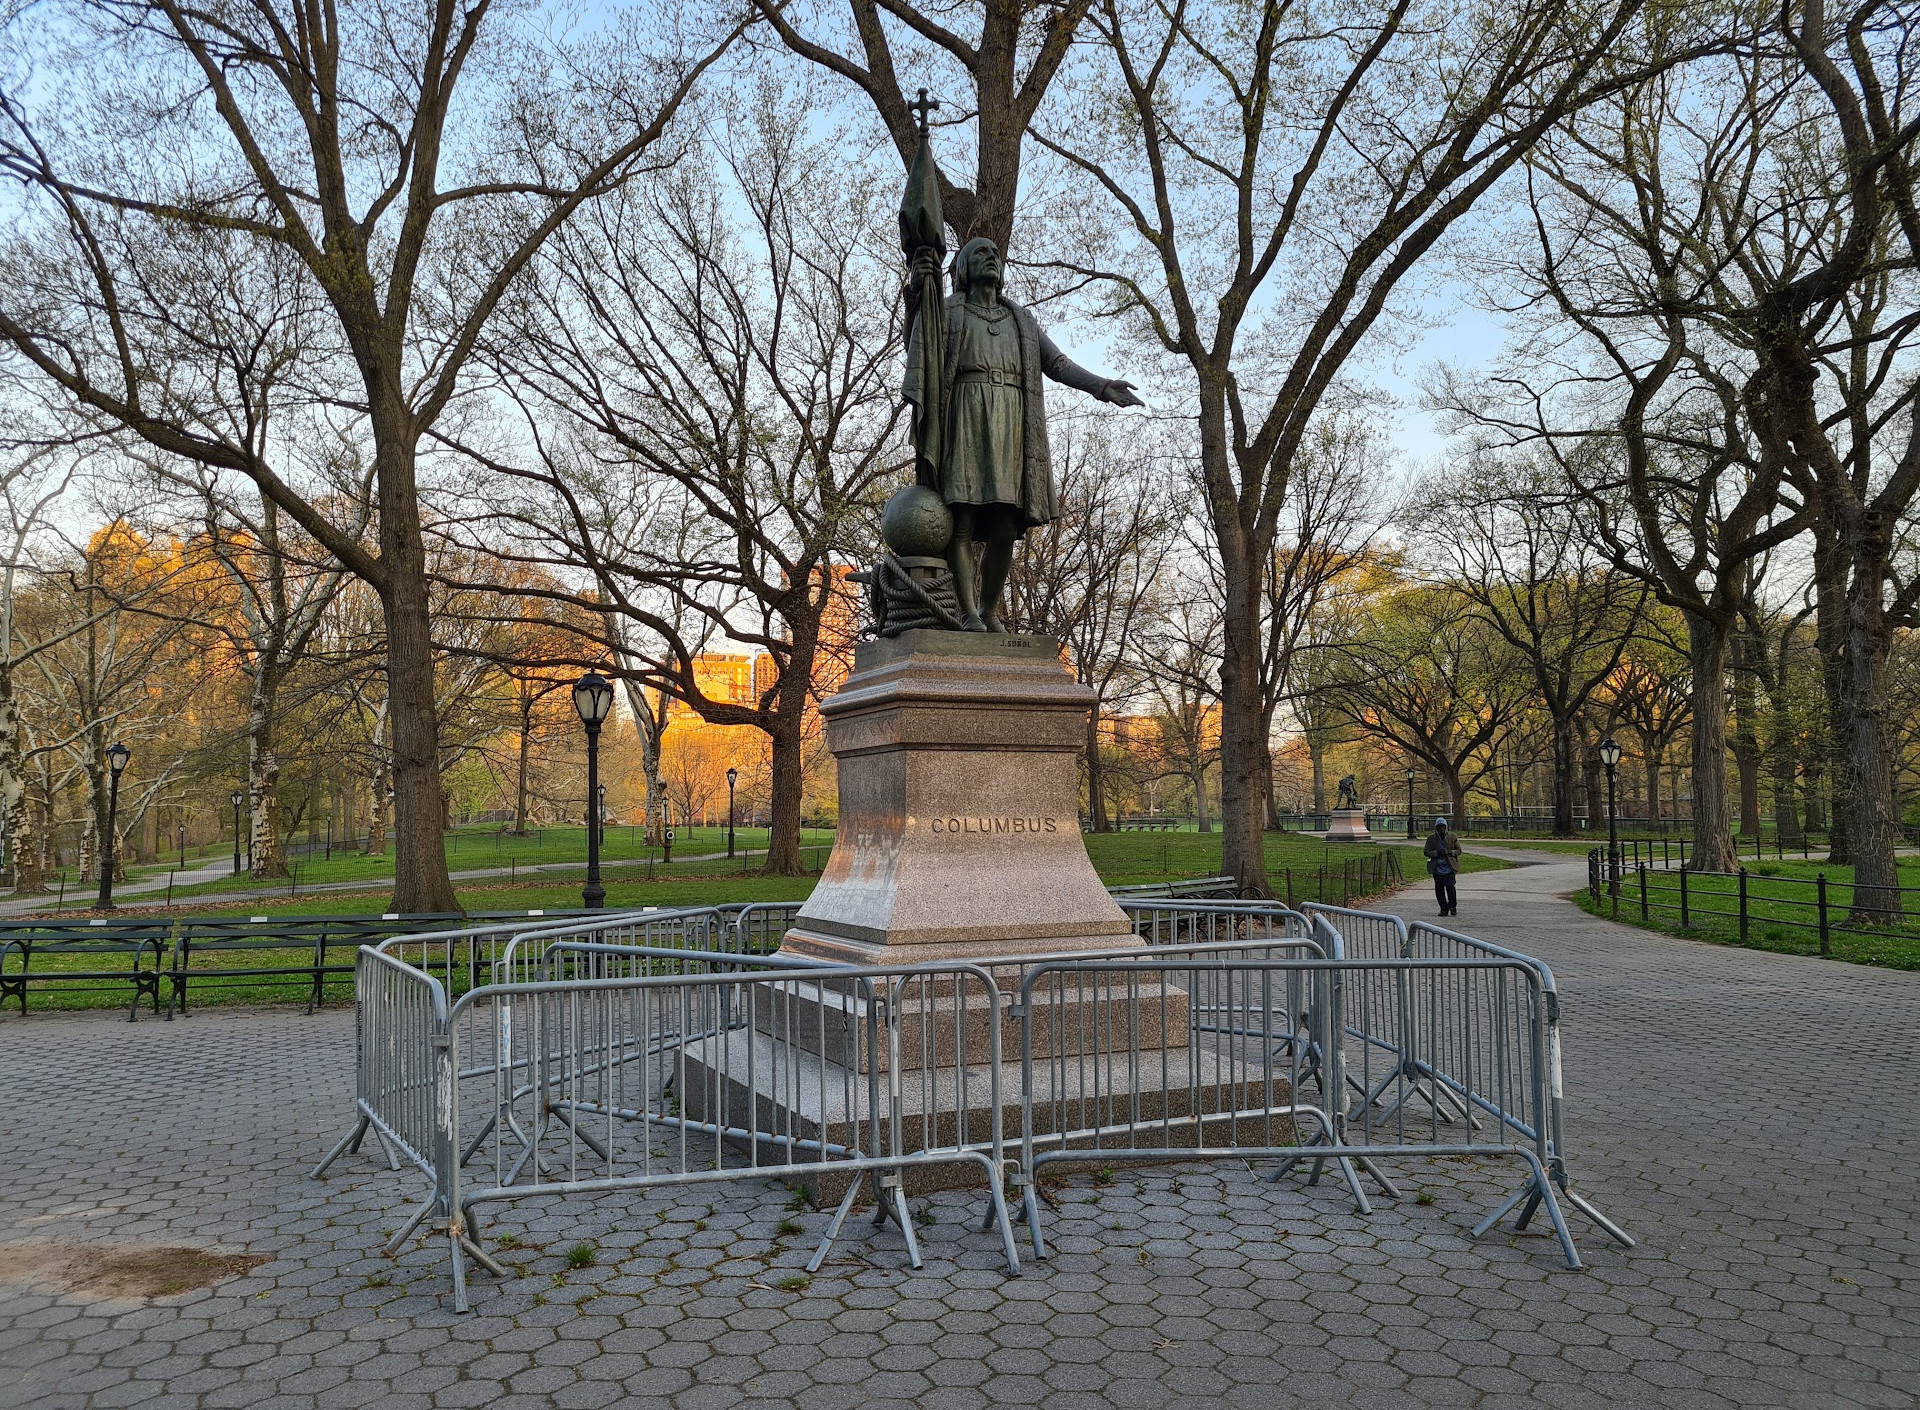 مجسمه کریستف کلمب